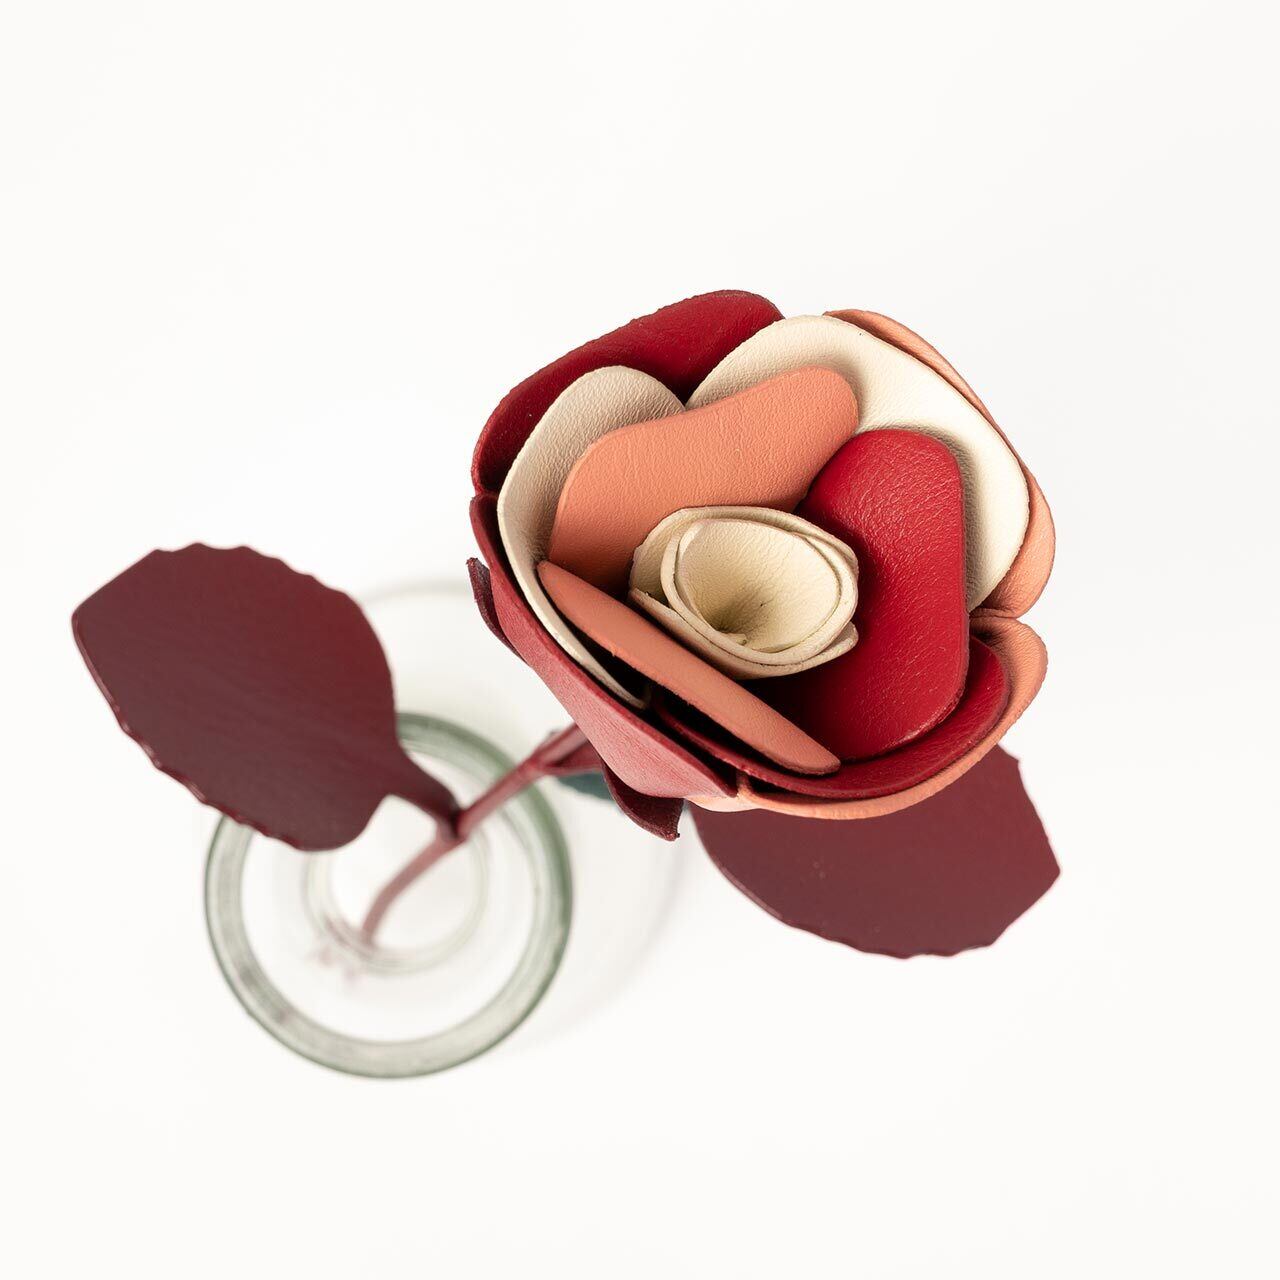 限定デザイン 革の一輪花 バラ Joggo Stock 枯れない革の花とブーケ 革製品のお手入れに使うレザーケアグッズの販売サイト